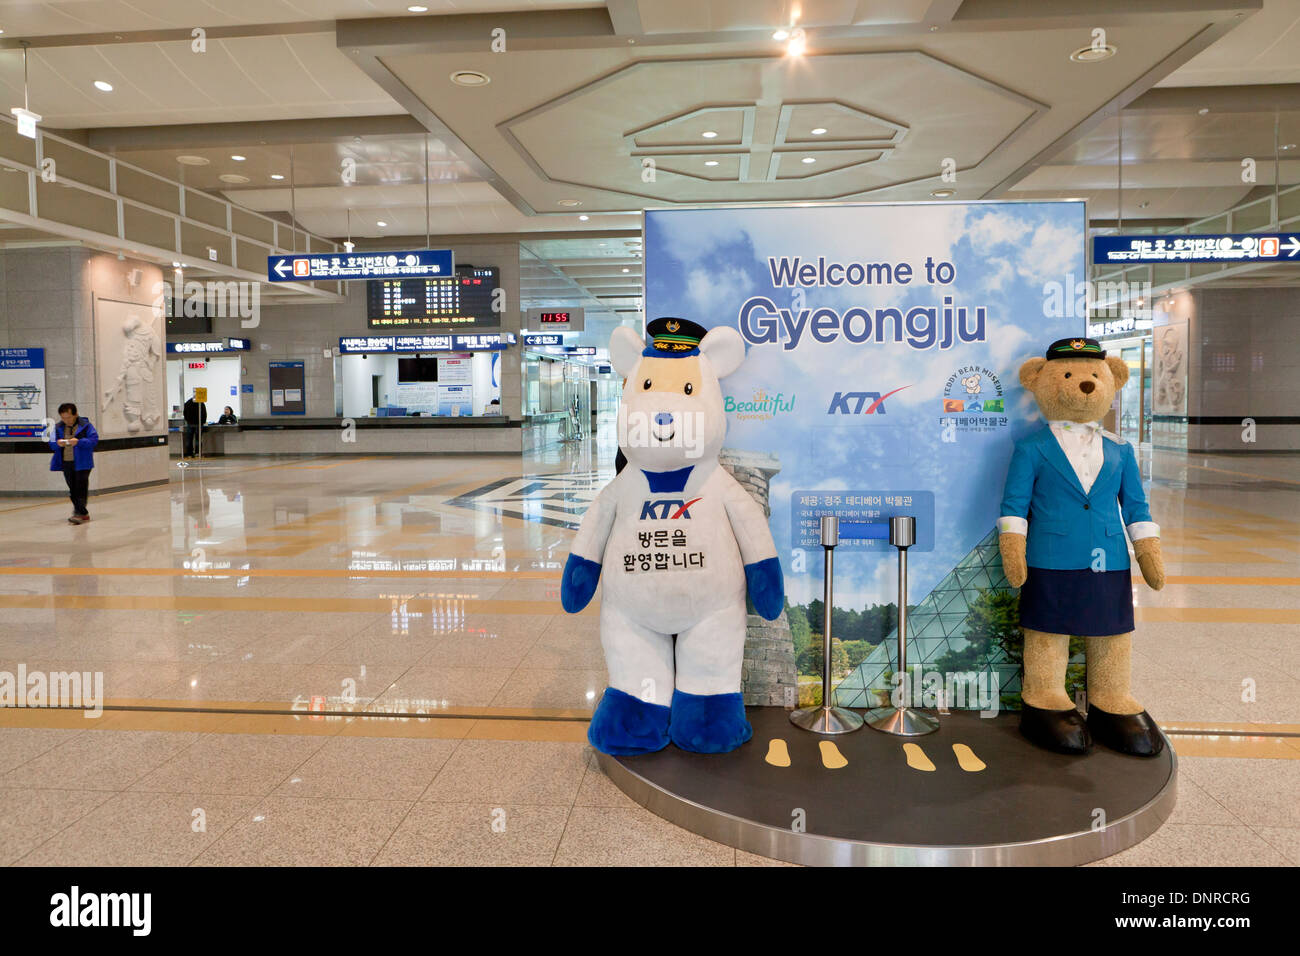 Welcome sign at Gyeongju KTX train station - North Gyeongsang province, South Korea Stock Photo